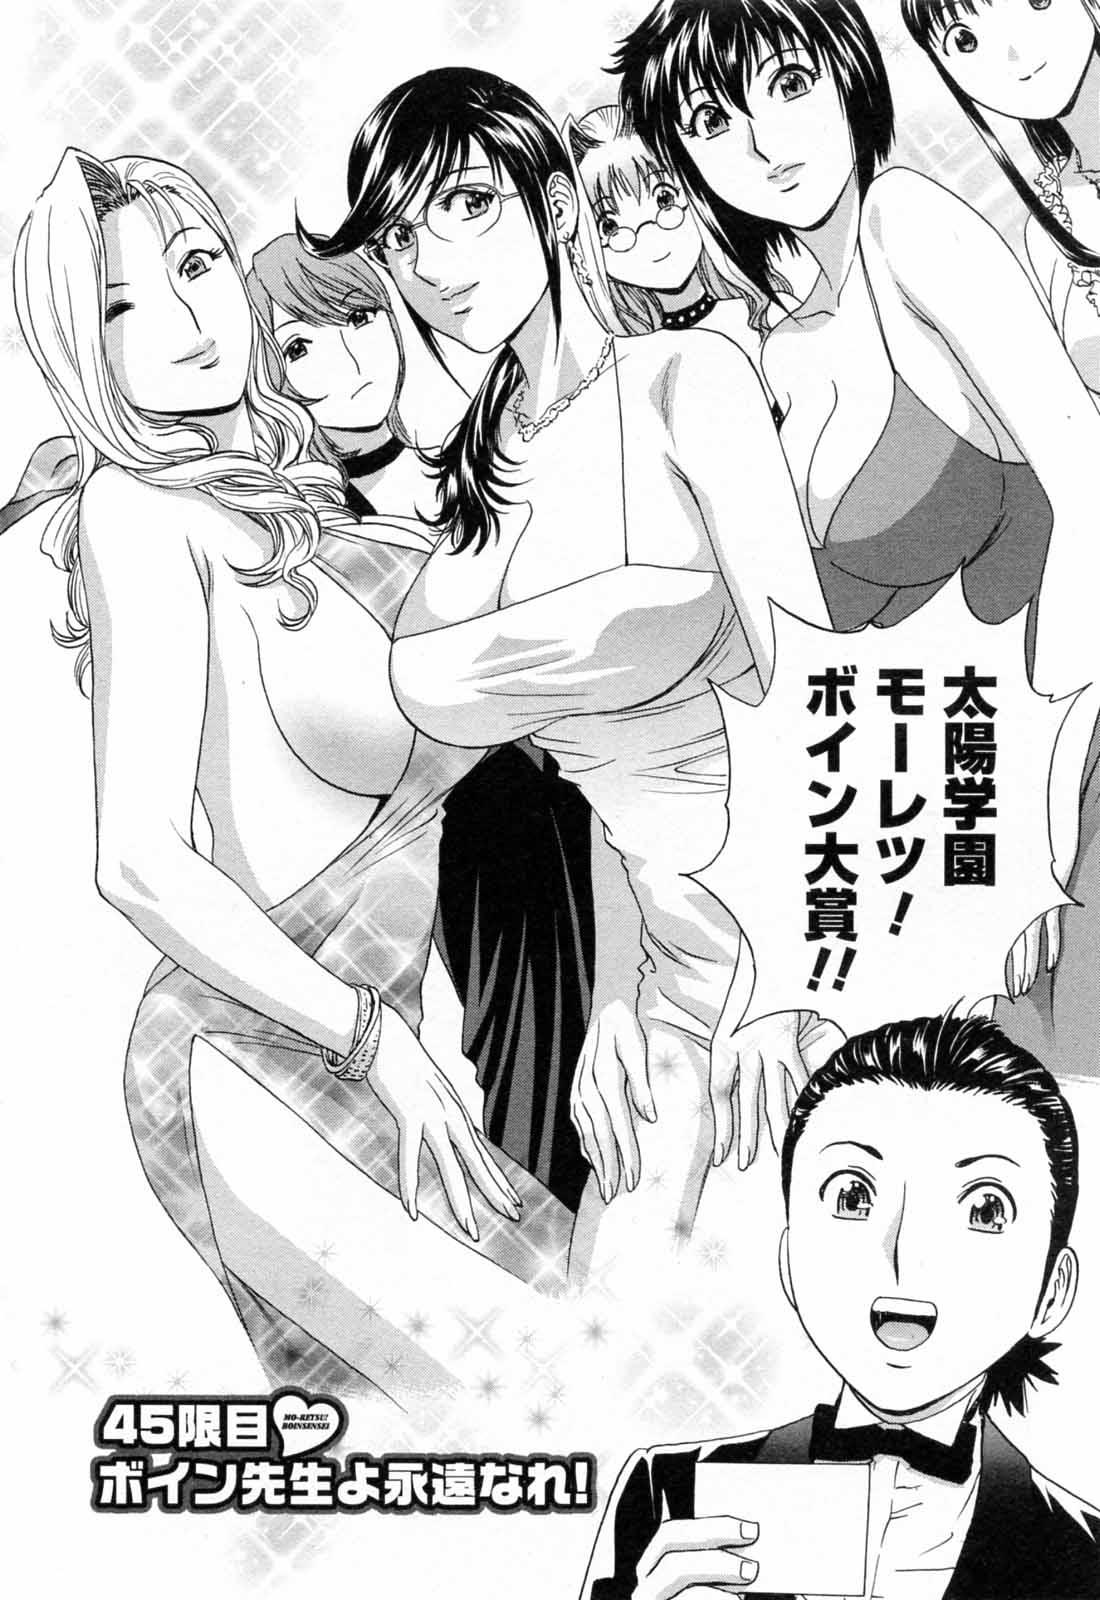 [Hidemaru] Mo-Retsu! Boin Sensei (Boing Boing Teacher) Vol.5 175